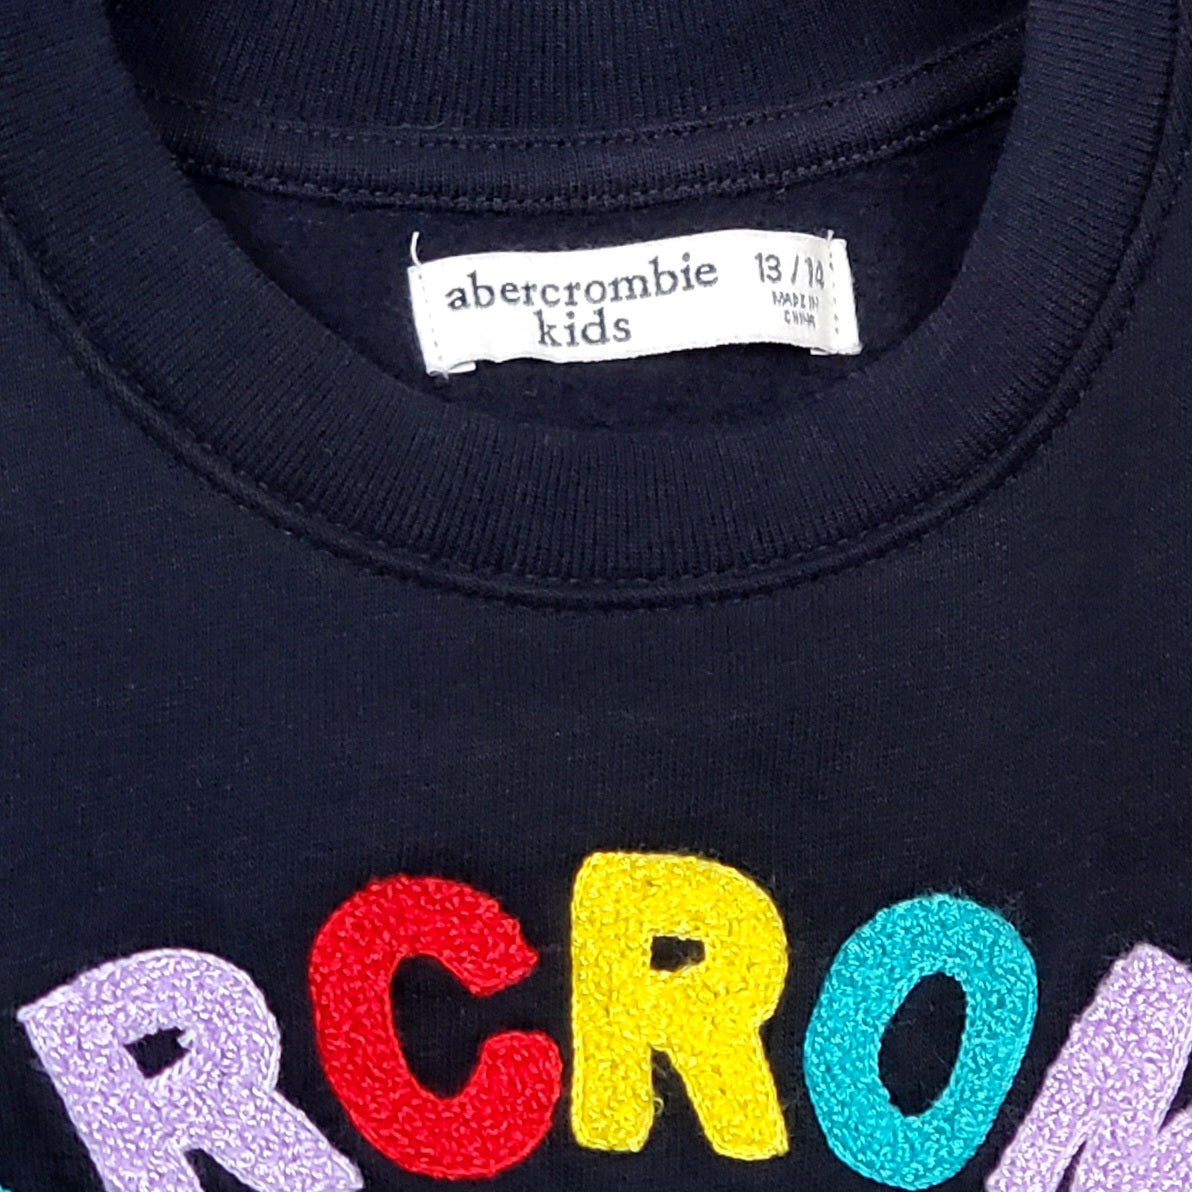 Abercrombie Kids Black Logo Sweatshirt Size 13 Used, close-up